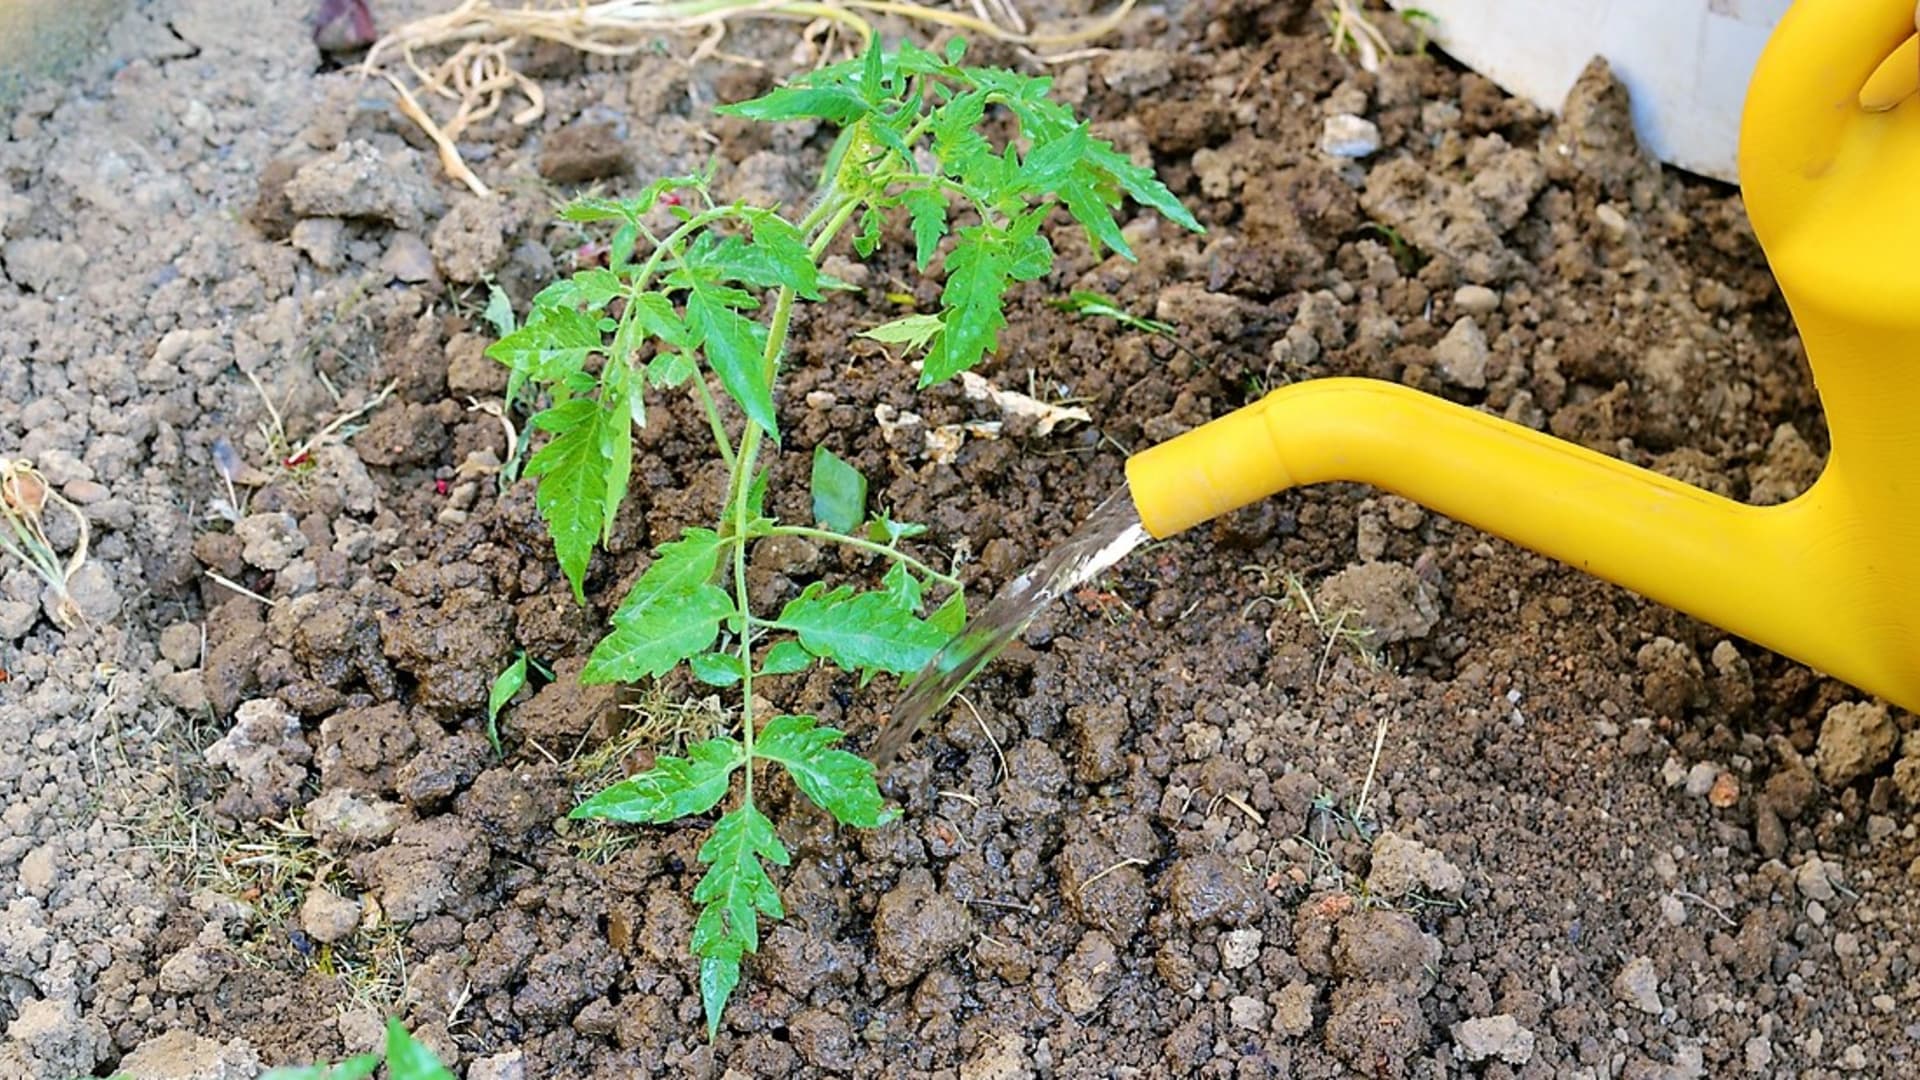 Chlebové hnojivo můžeme aplikovat už na sazenice rajčat, aby zesílily a byly pevnější. Přestávka mezi hnojením by měla být zhruba dva týdny.